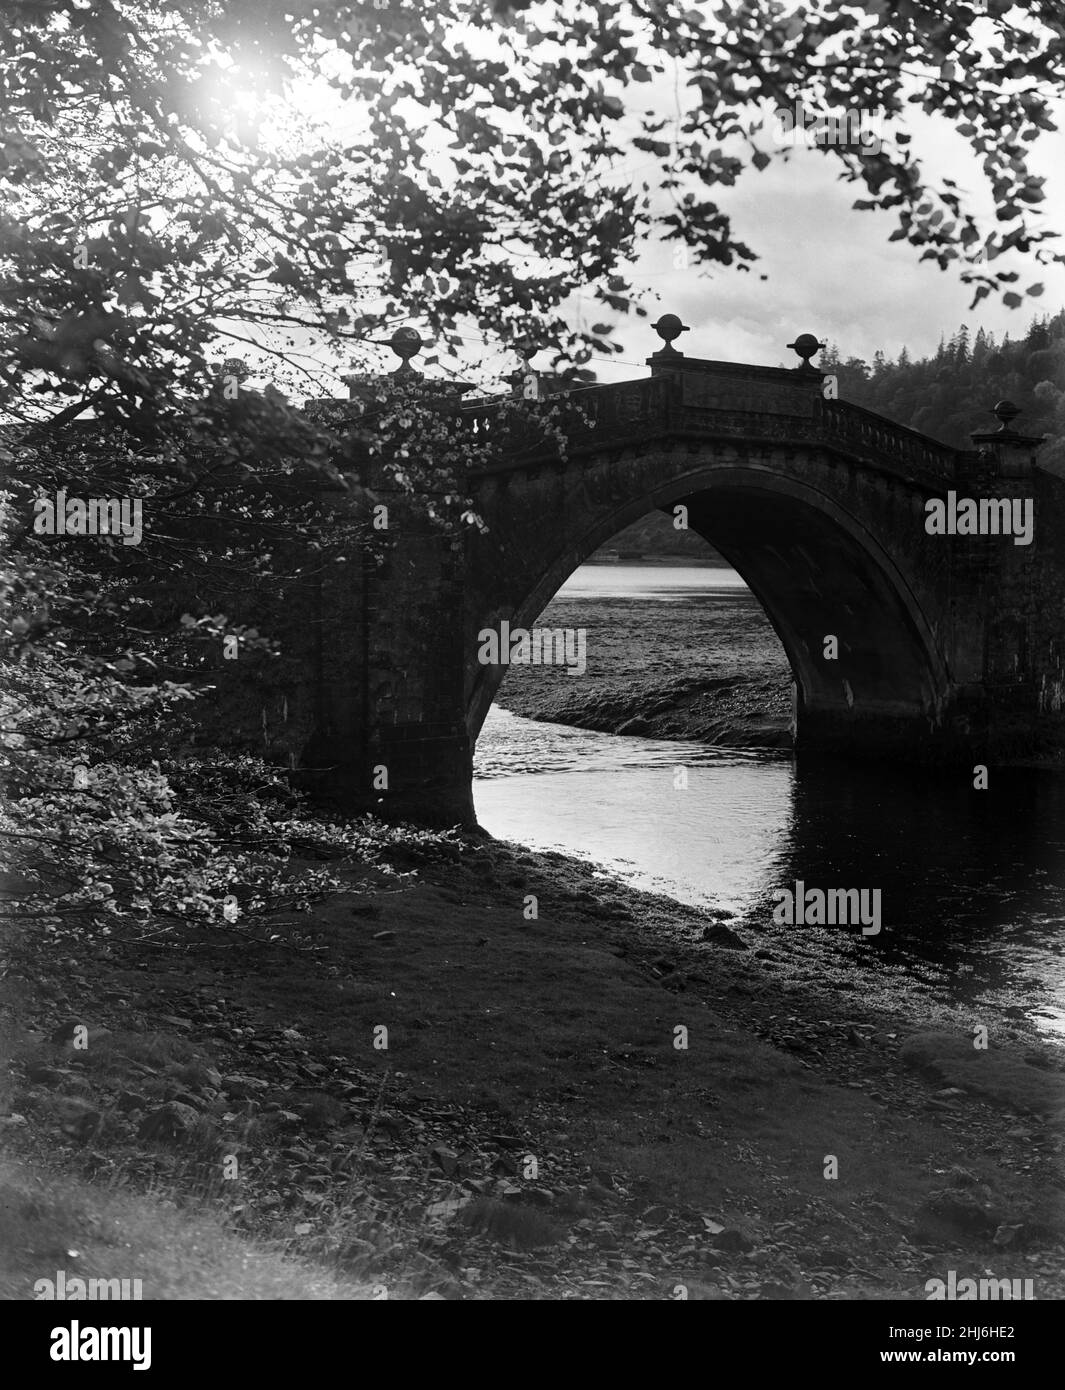 Aray Bridge, sotto il quale si incontrano il fiume Aray e Loch Fyne. Attraverso l'arco del vecchio ponte Loch Fyne può essere visto in tutto il suo splendore con sonnolenta Inveraray abbracciare sulle sue rive. Argyll and Bute, Scozia, 7th novembre 1956. Foto Stock